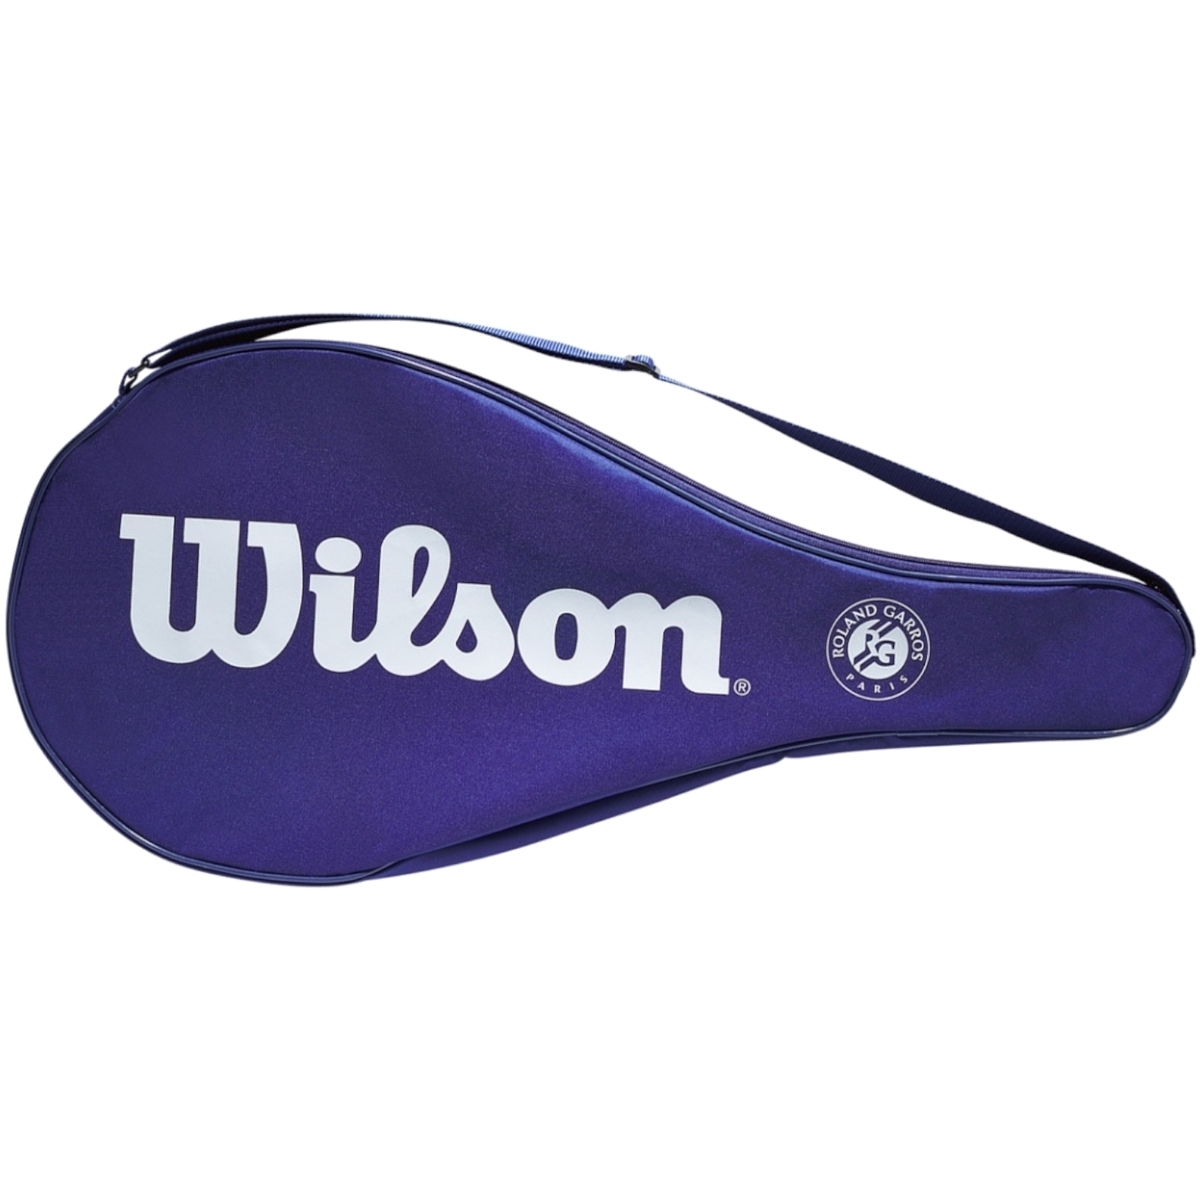 Αθλητική τσάντα Wilson Roland Garros Tennis Cover Bag